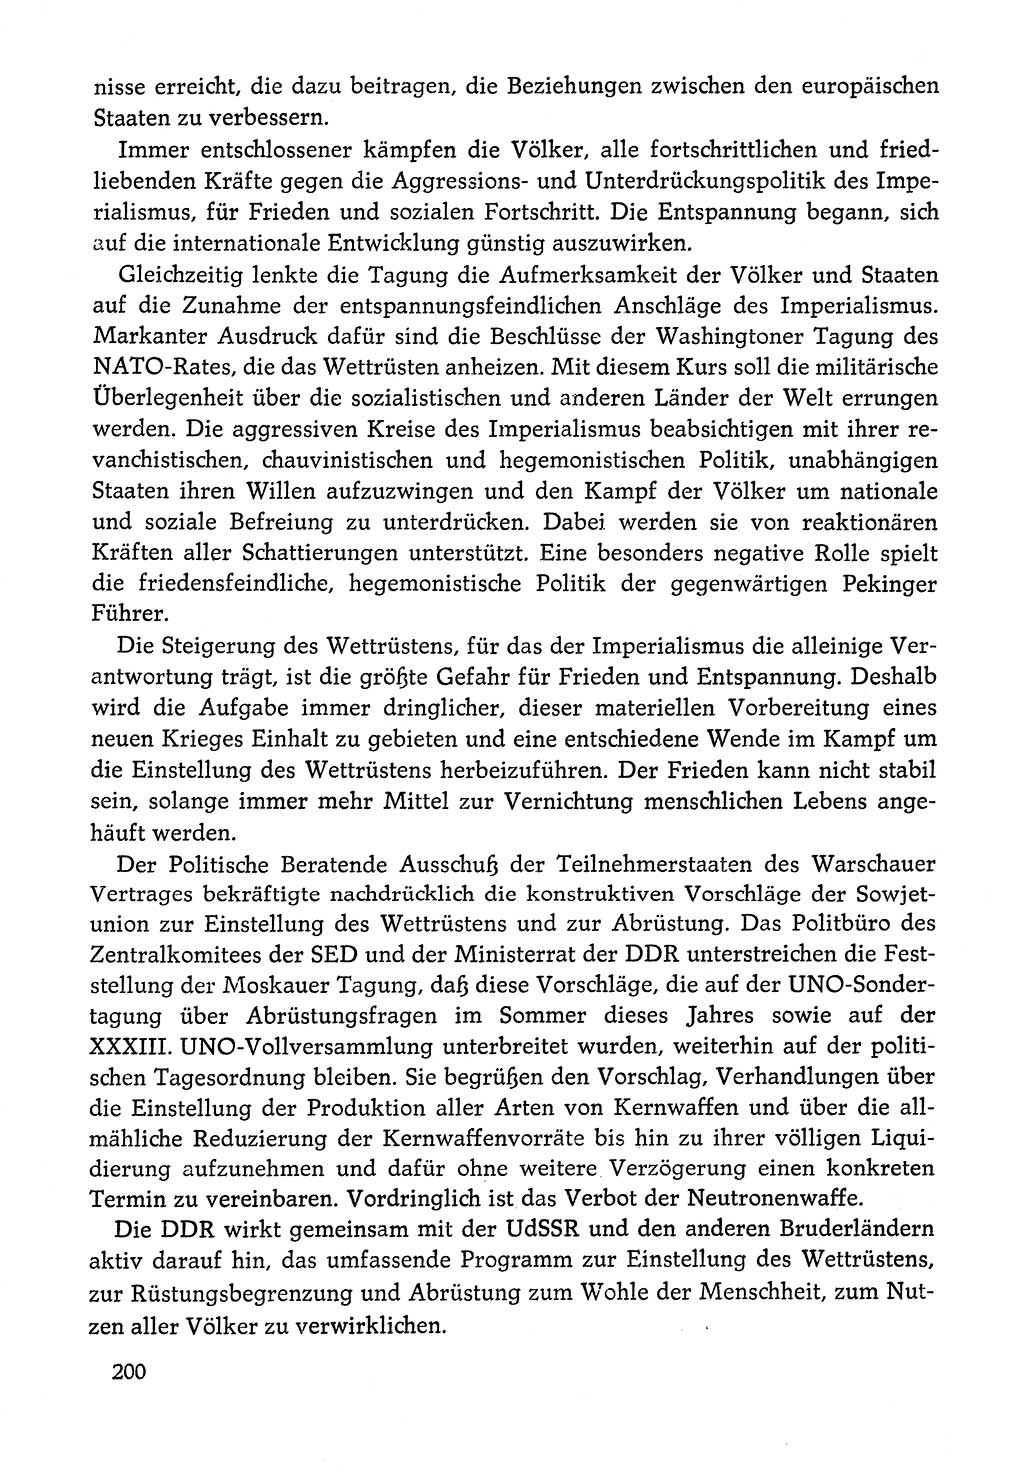 Dokumente der Sozialistischen Einheitspartei Deutschlands (SED) [Deutsche Demokratische Republik (DDR)] 1978-1979, Seite 200 (Dok. SED DDR 1978-1979, S. 200)